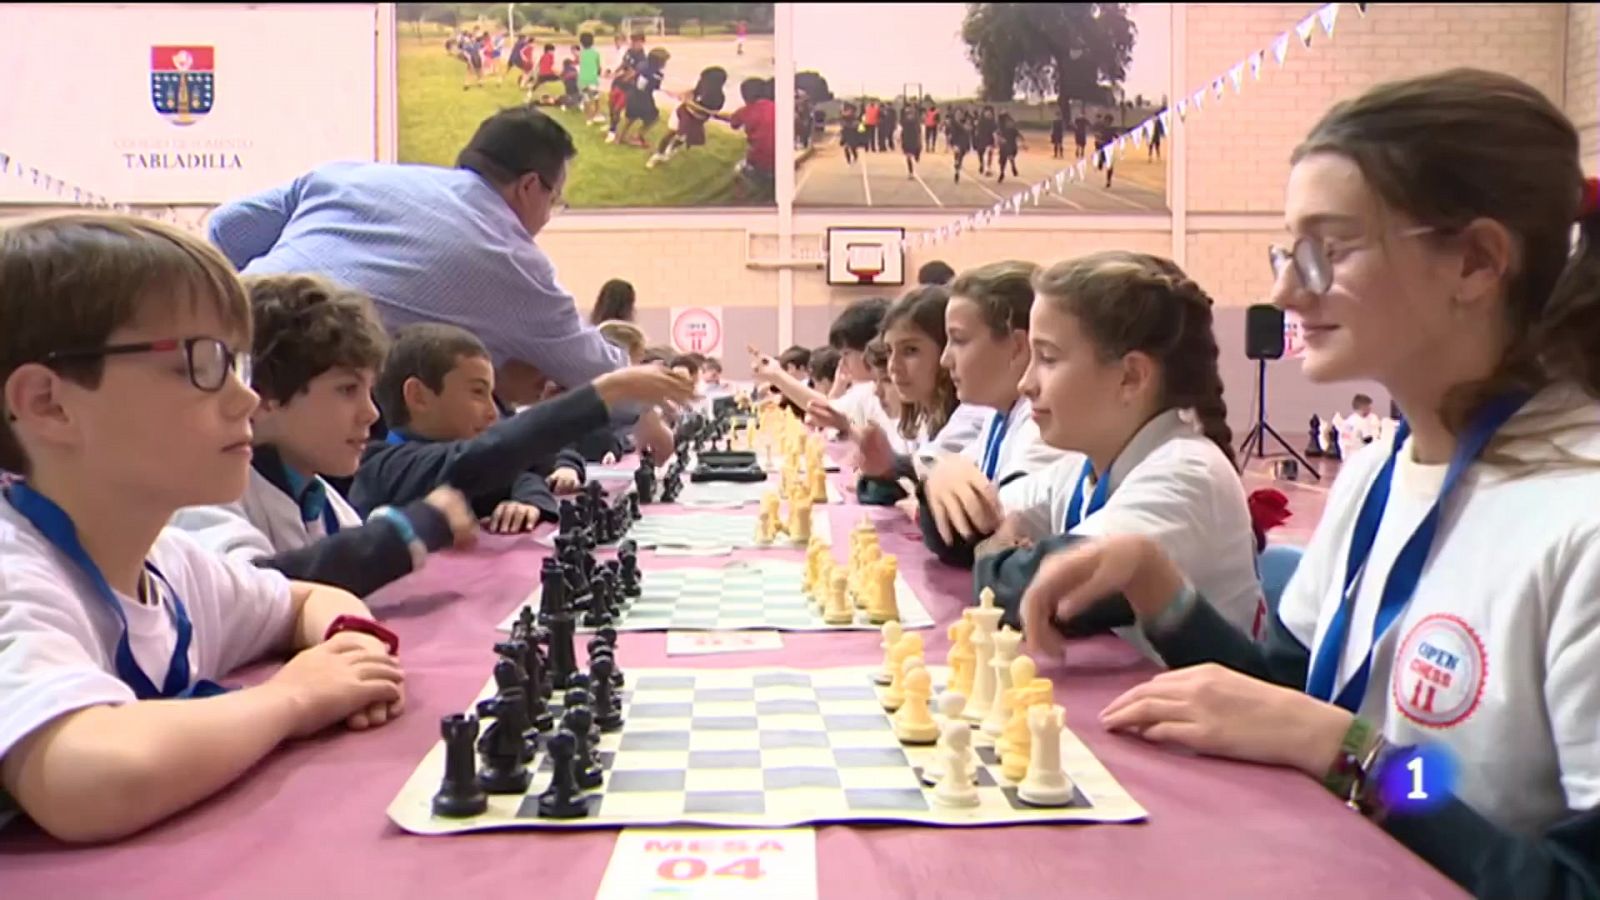 Día internacional del ajedrez: El juego del 'Jaque Mate' que busca iluminar  la mente